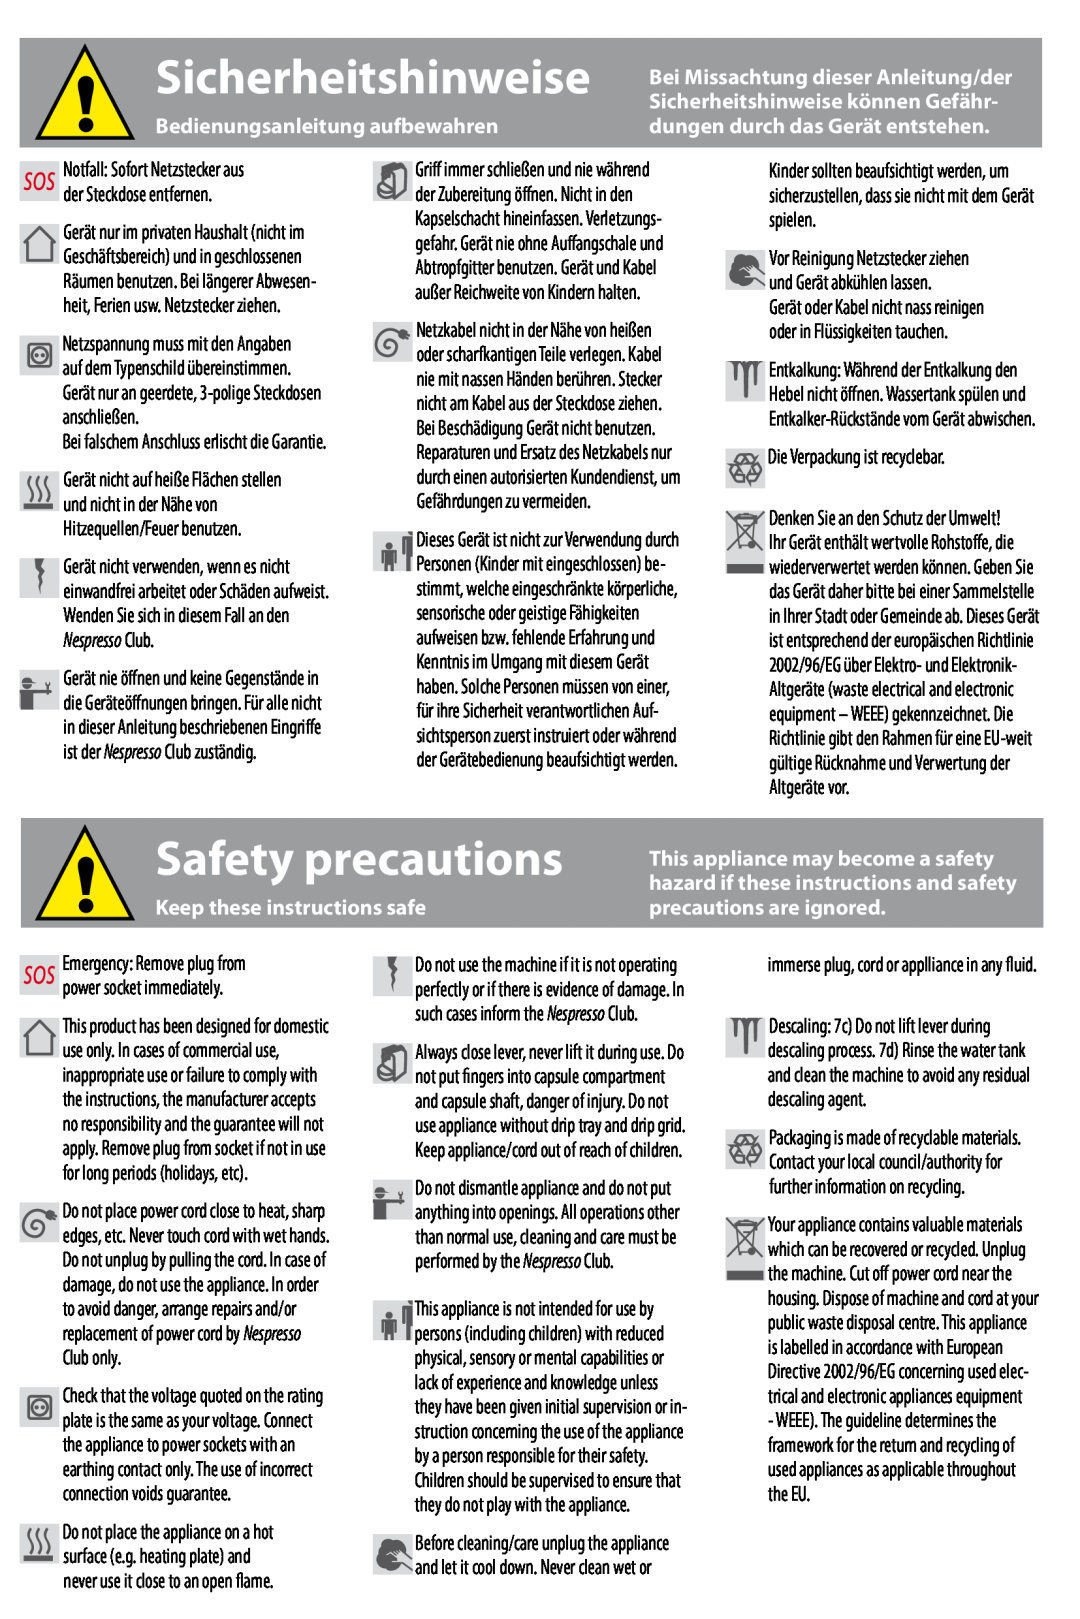 Siemens SN30 Bedienungsanleitung aufbewahren, Keep these instructions safe, precautions are ignored, Sicherheitshinweise 